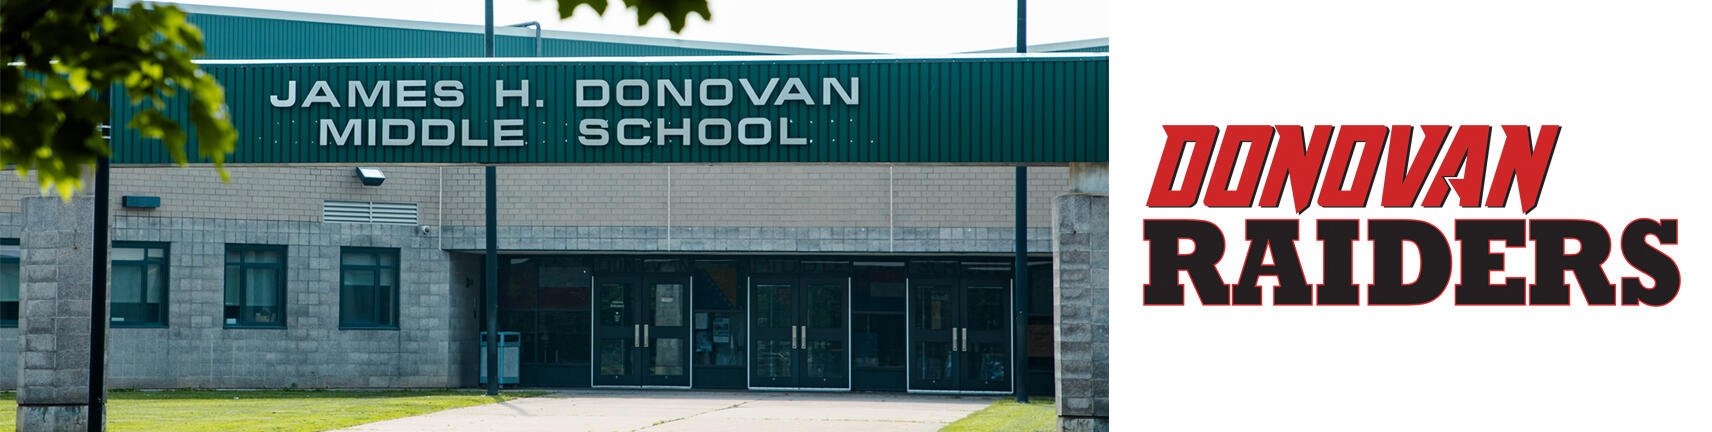 Slika zgrade Donovan škole i logotipa Donovan Rejders